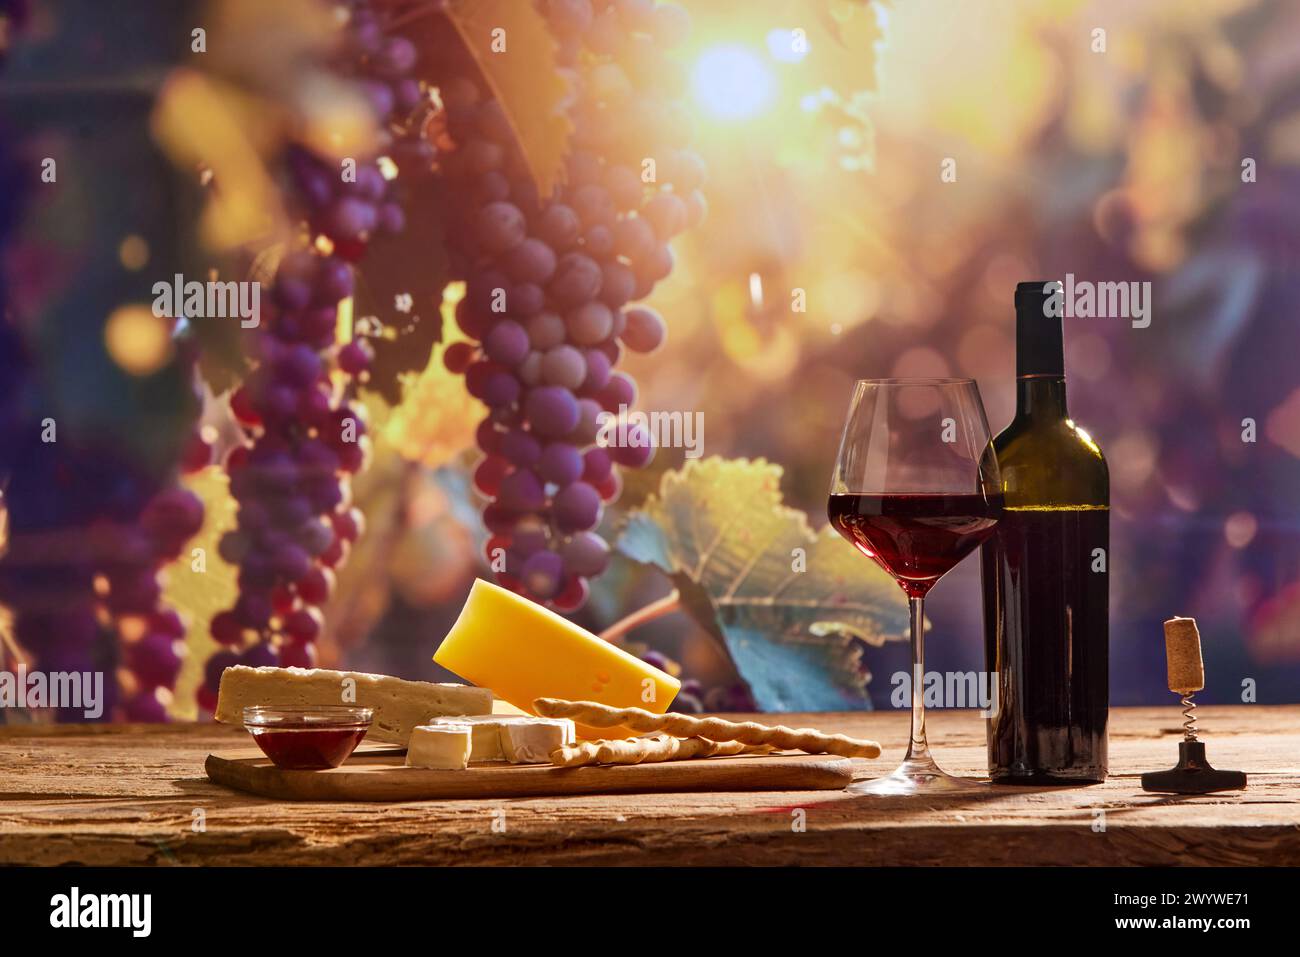 Fesselndes Bild mit dem Wesen der Weinherstellung, mit einer Flasche Wein und einem Glas Rotwein, Käse vor dem Hintergrund malerischer Traubenbäume Stockfoto